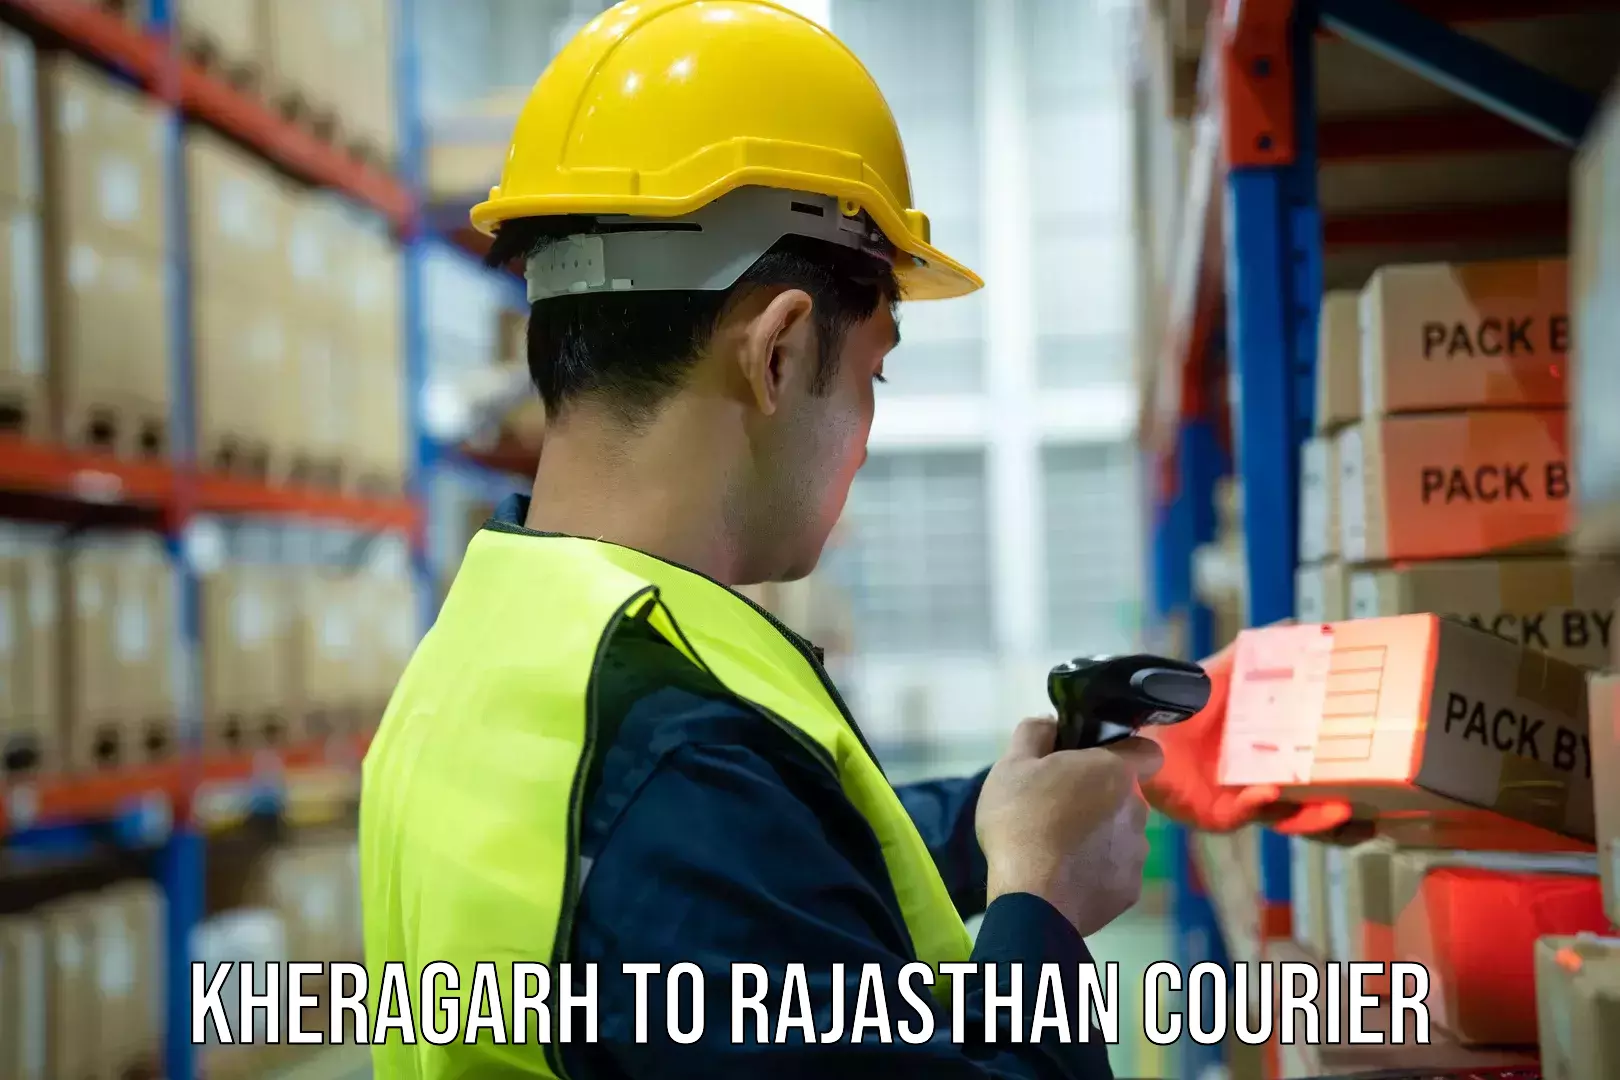 Regular parcel service Kheragarh to Rajasthan